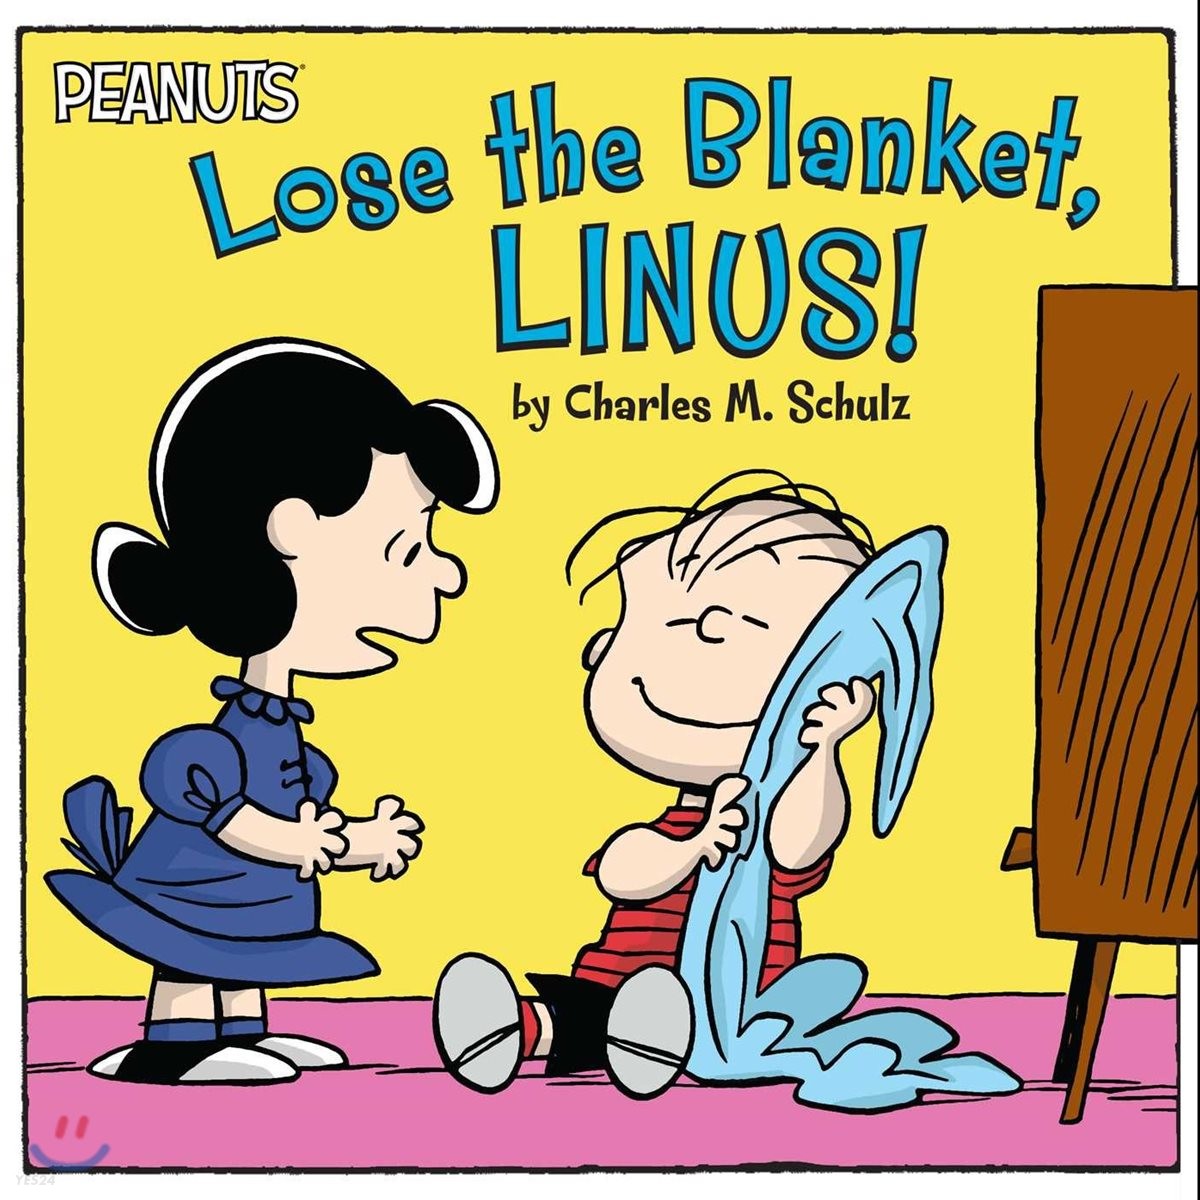 Lose the Blanket Linus!